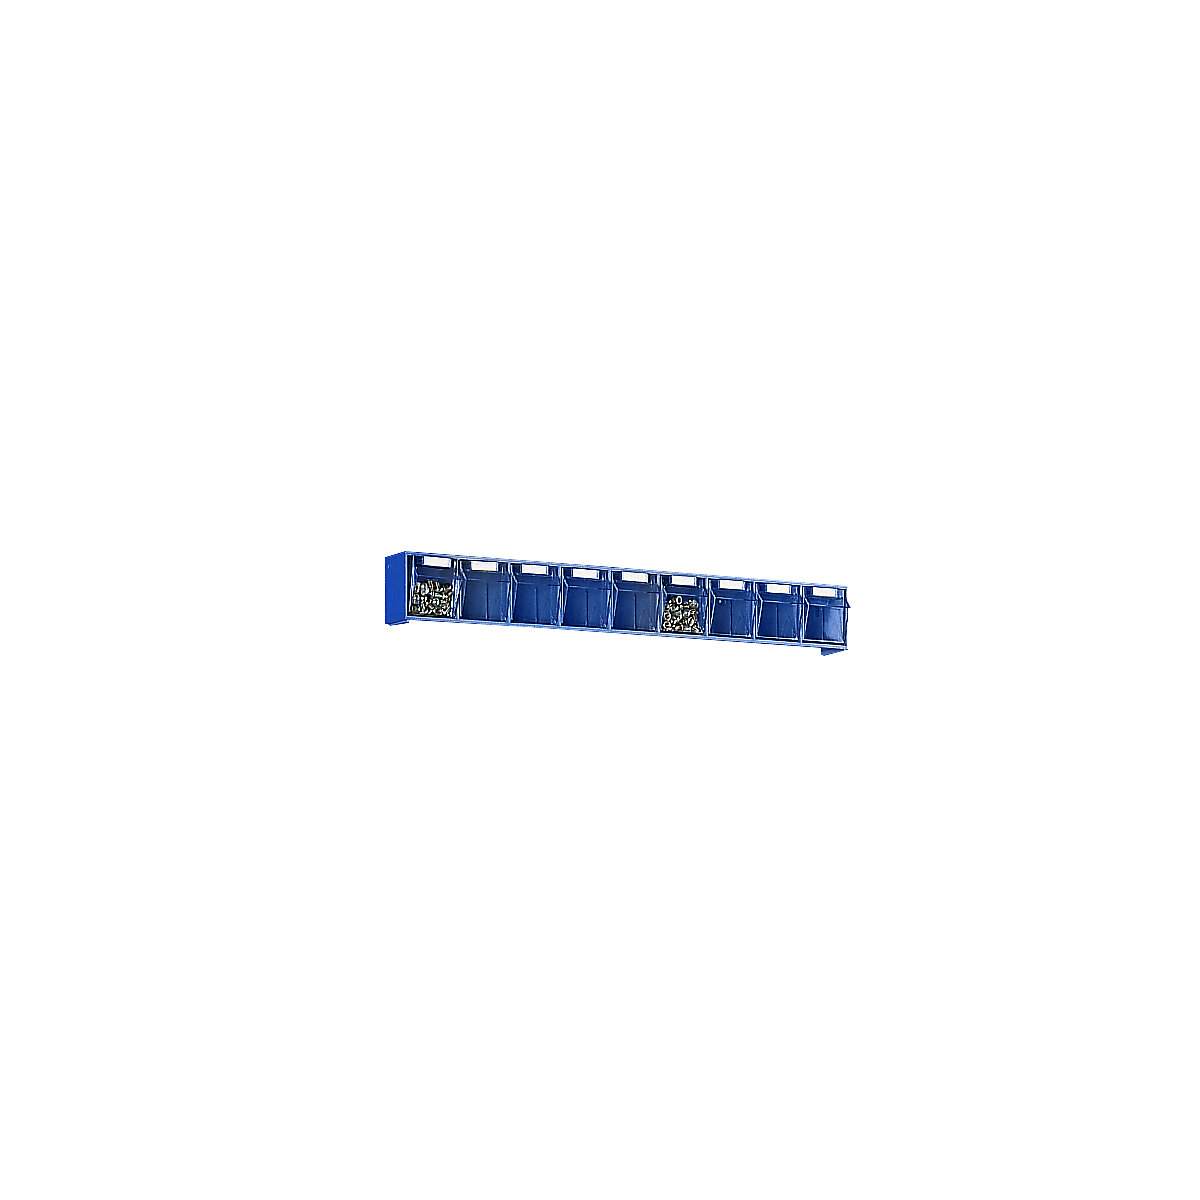 Système de bacs pivotants, casier h x l x p 77 x 600 x 62 mm, 9 bacs bleus-6